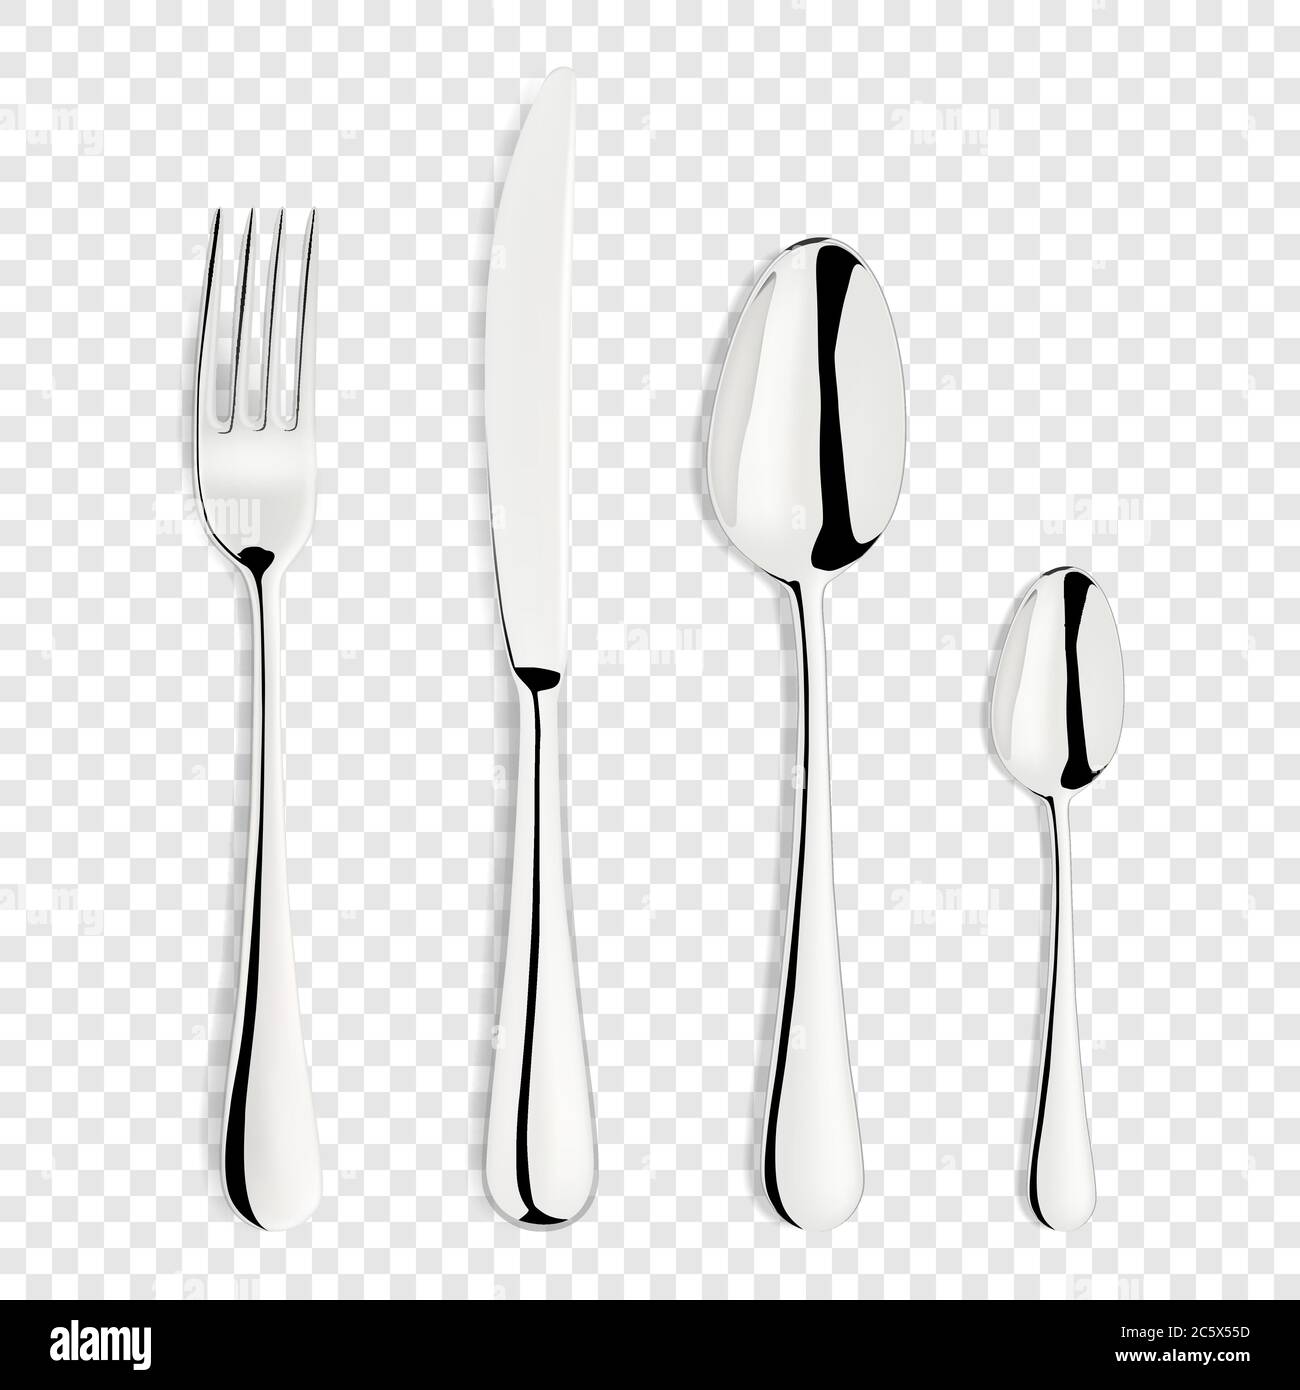 Vector 3d Realistic Metal, Silver, Inox, Steel Fork, Spoon, Knife Icon Set isolé sur fond transparent. Modèle de coutellerie pour desserts Illustration de Vecteur